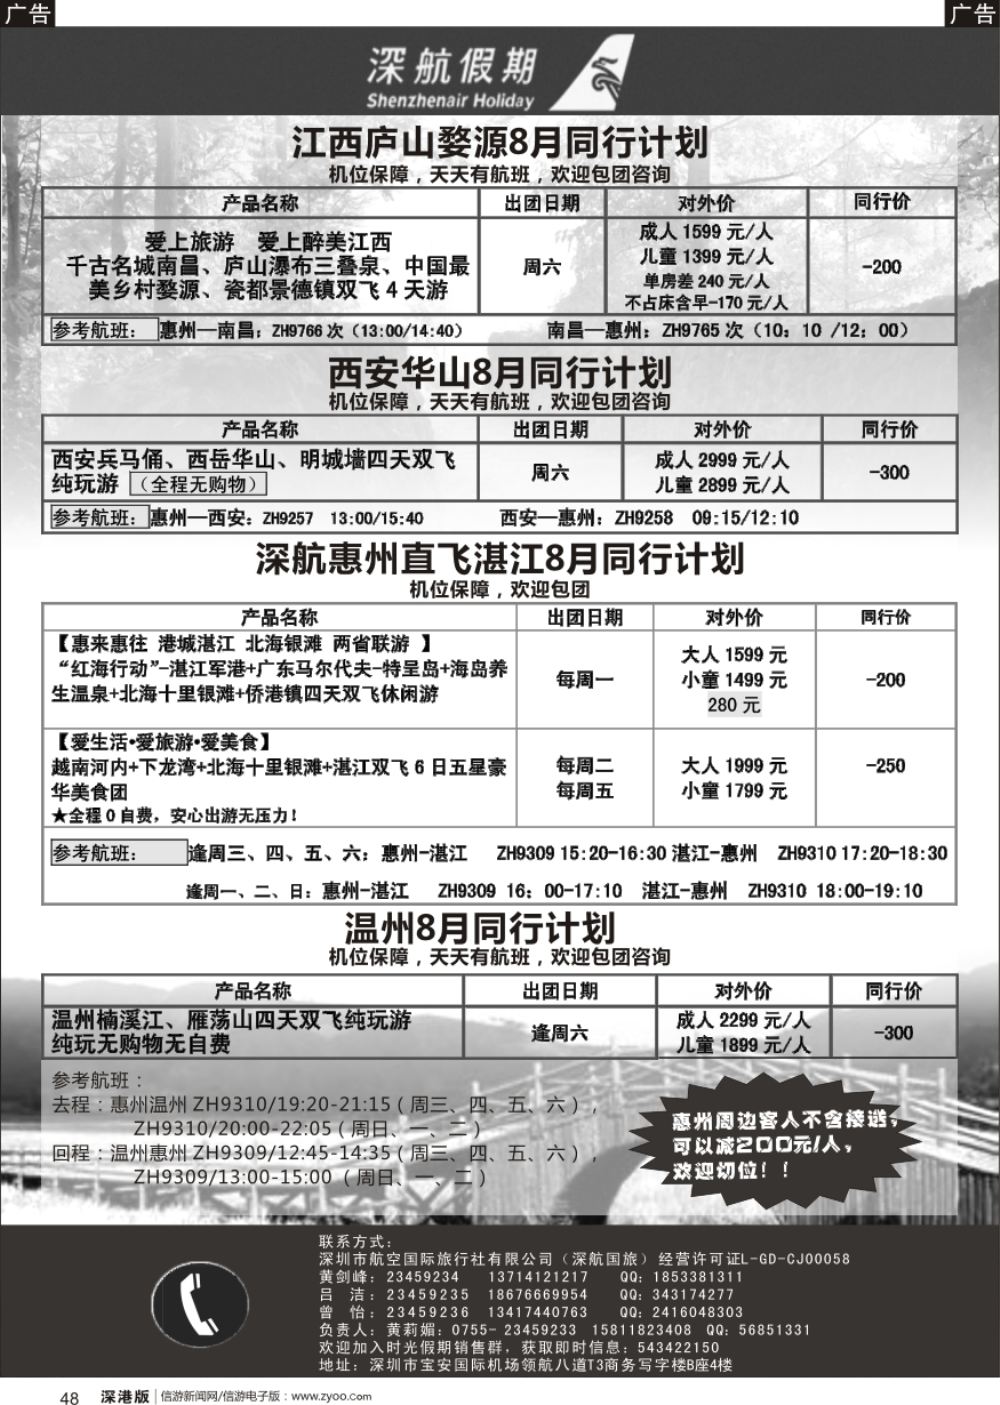 b黑048  深航假期8月惠州直飞湛江、江西庐山、西安、华山、温州同行计划